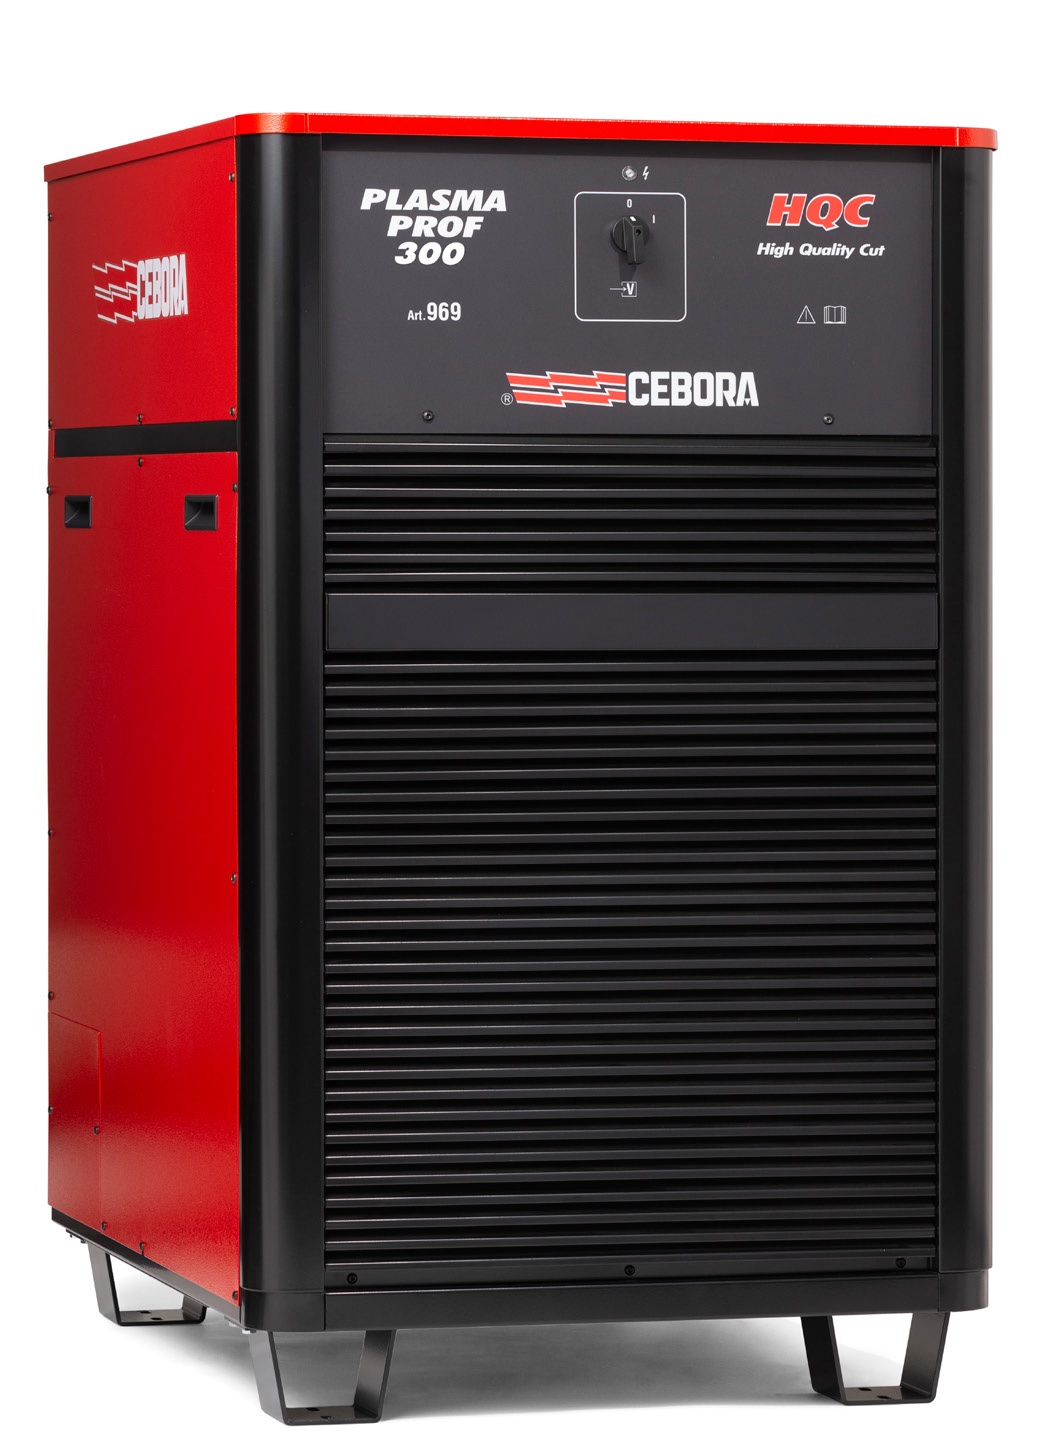 Аппарат плазменной резки Cebora PLASMA PROF 300 HQC + полный комплект для РОБОТА с автоматической консолью